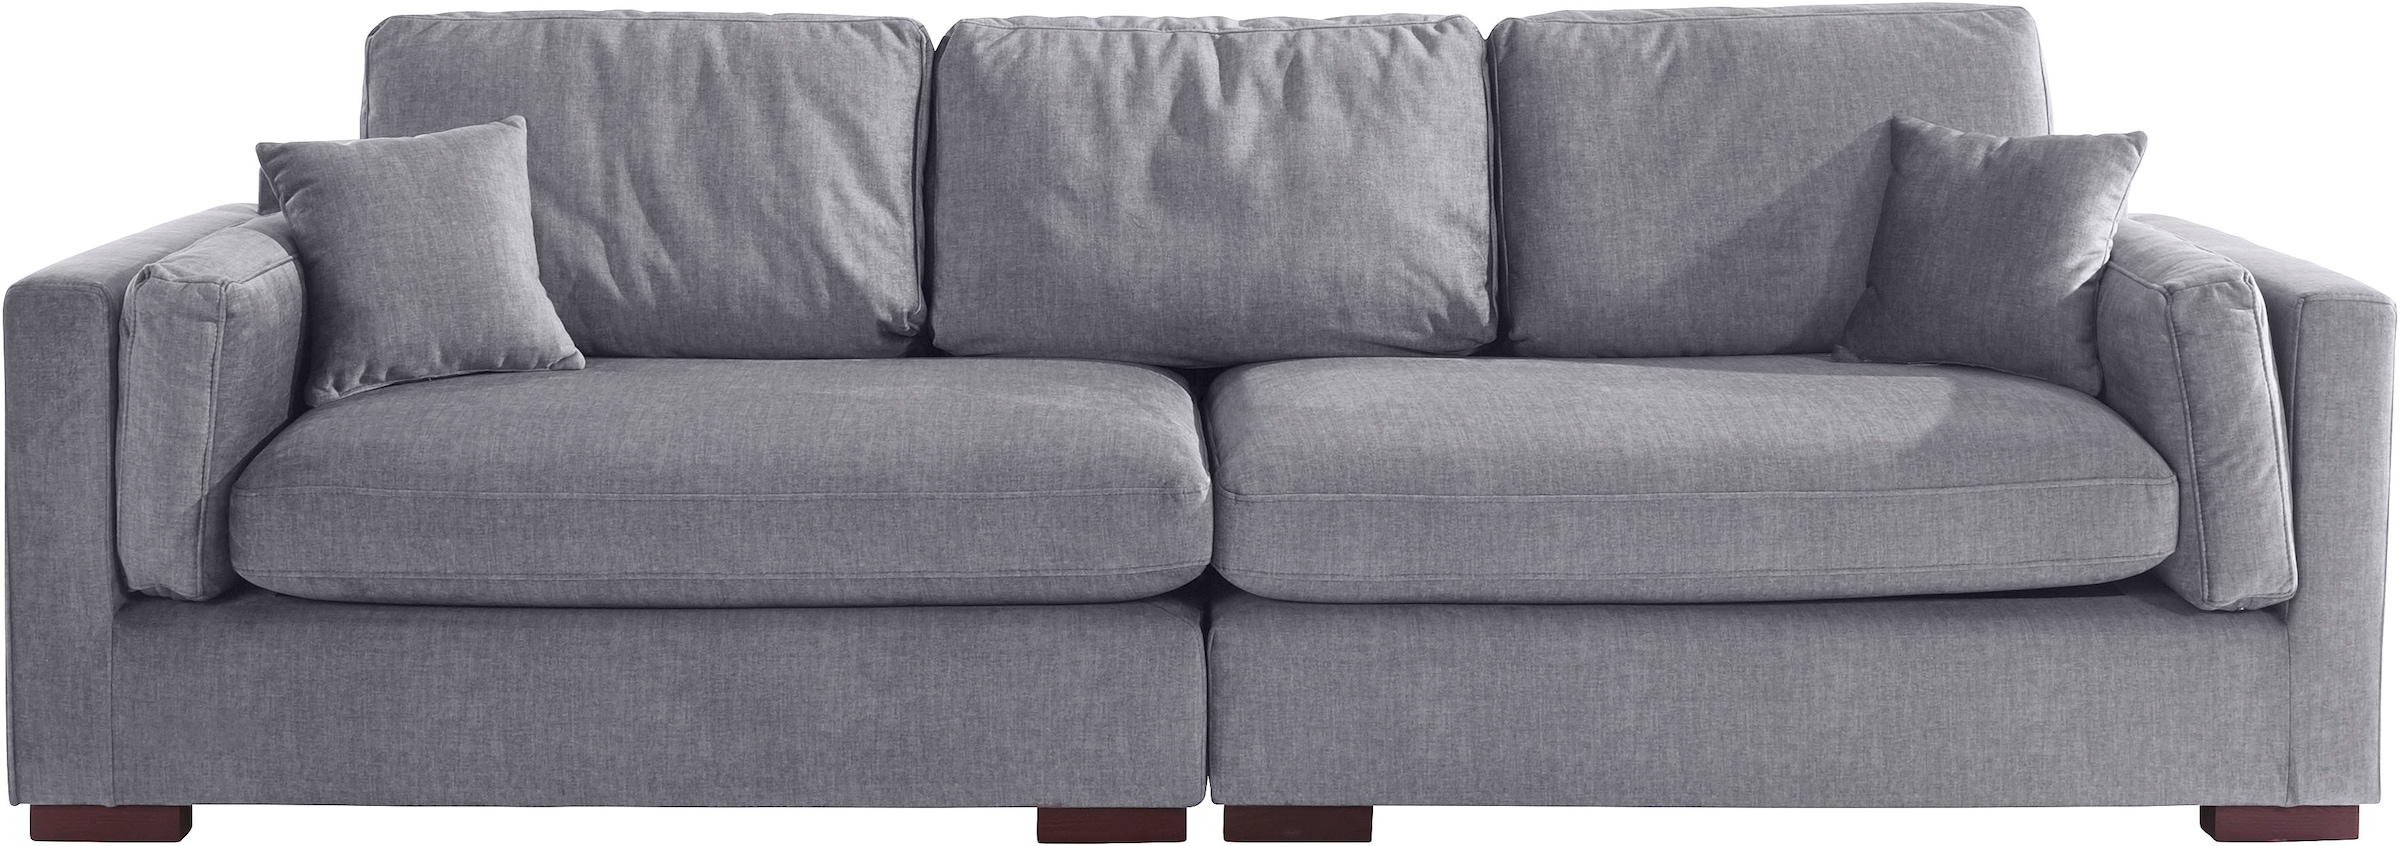 Home affaire Big-Sofa »Fresh Pond«, in vielen Bezugsqualitäten und Farben, B/T/H: 290/96/95 cm